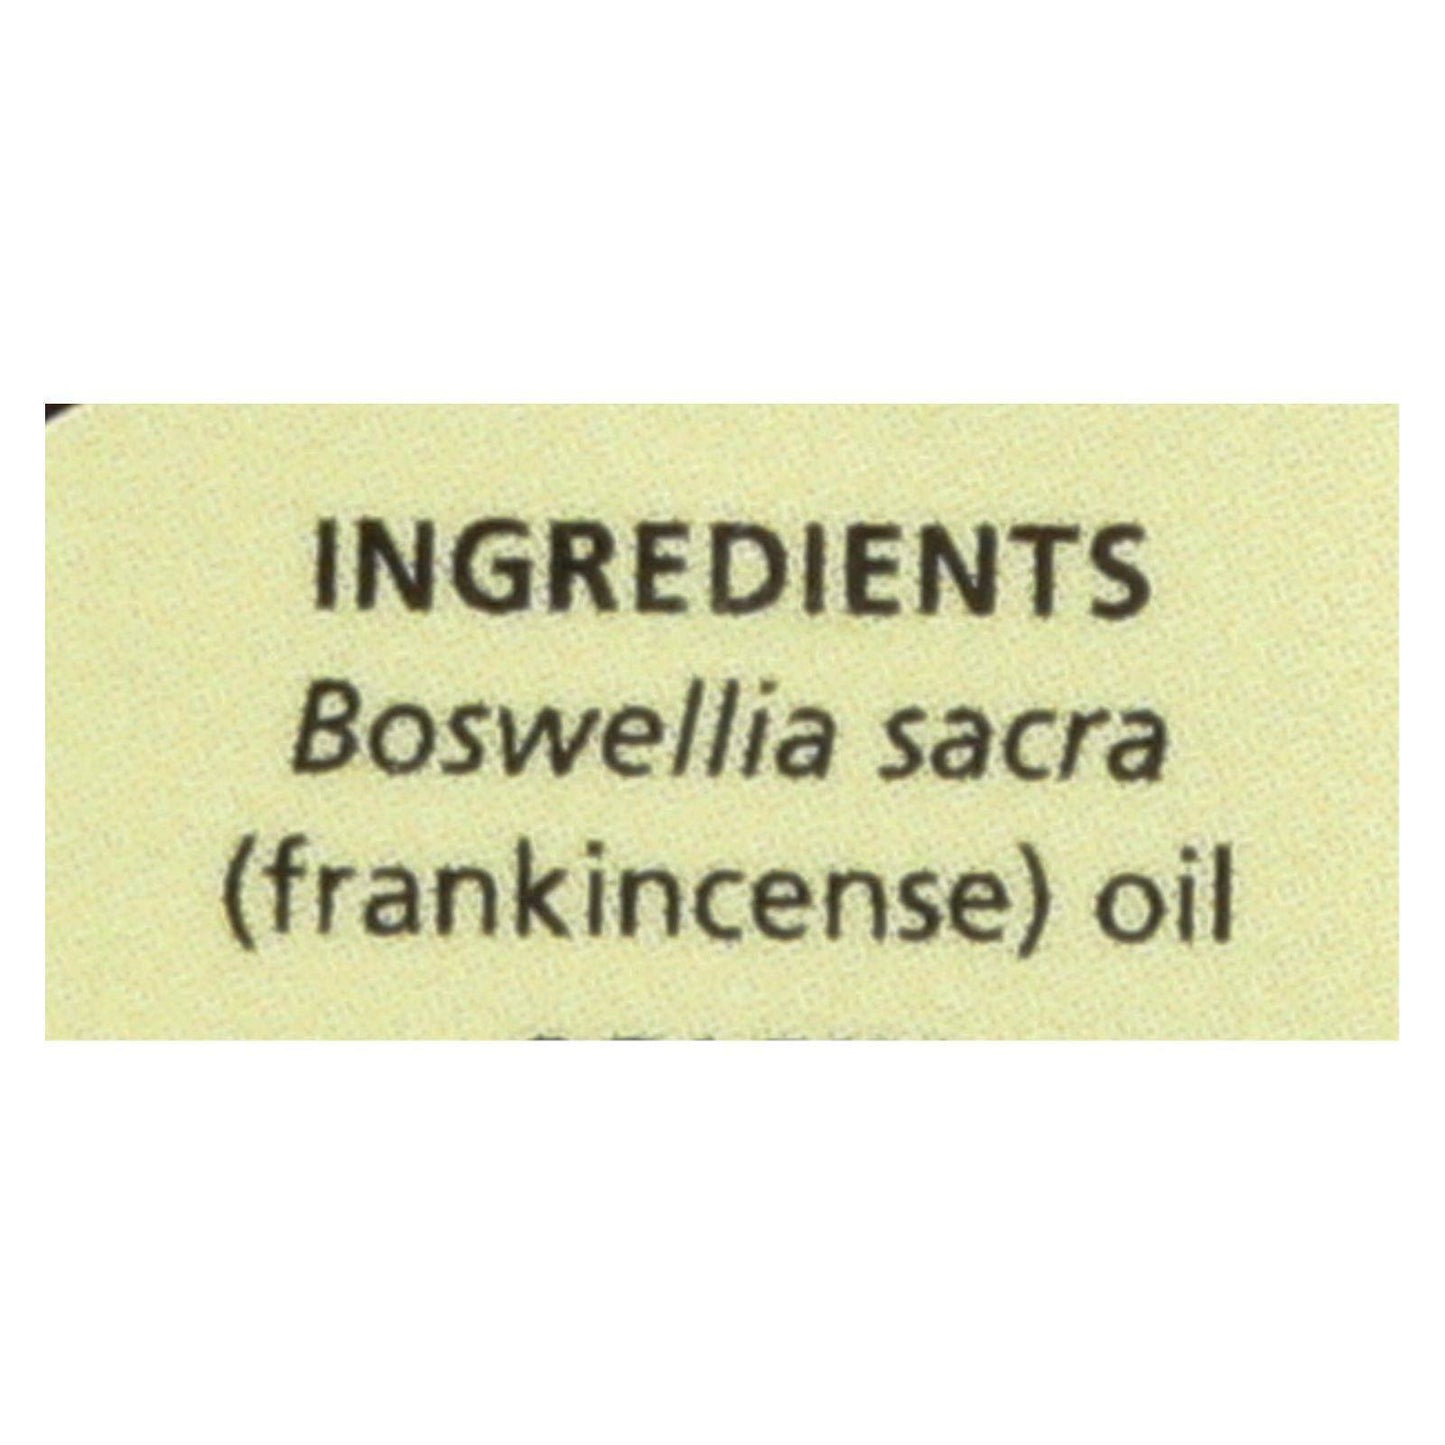 Pure Essential Oil Frankincense